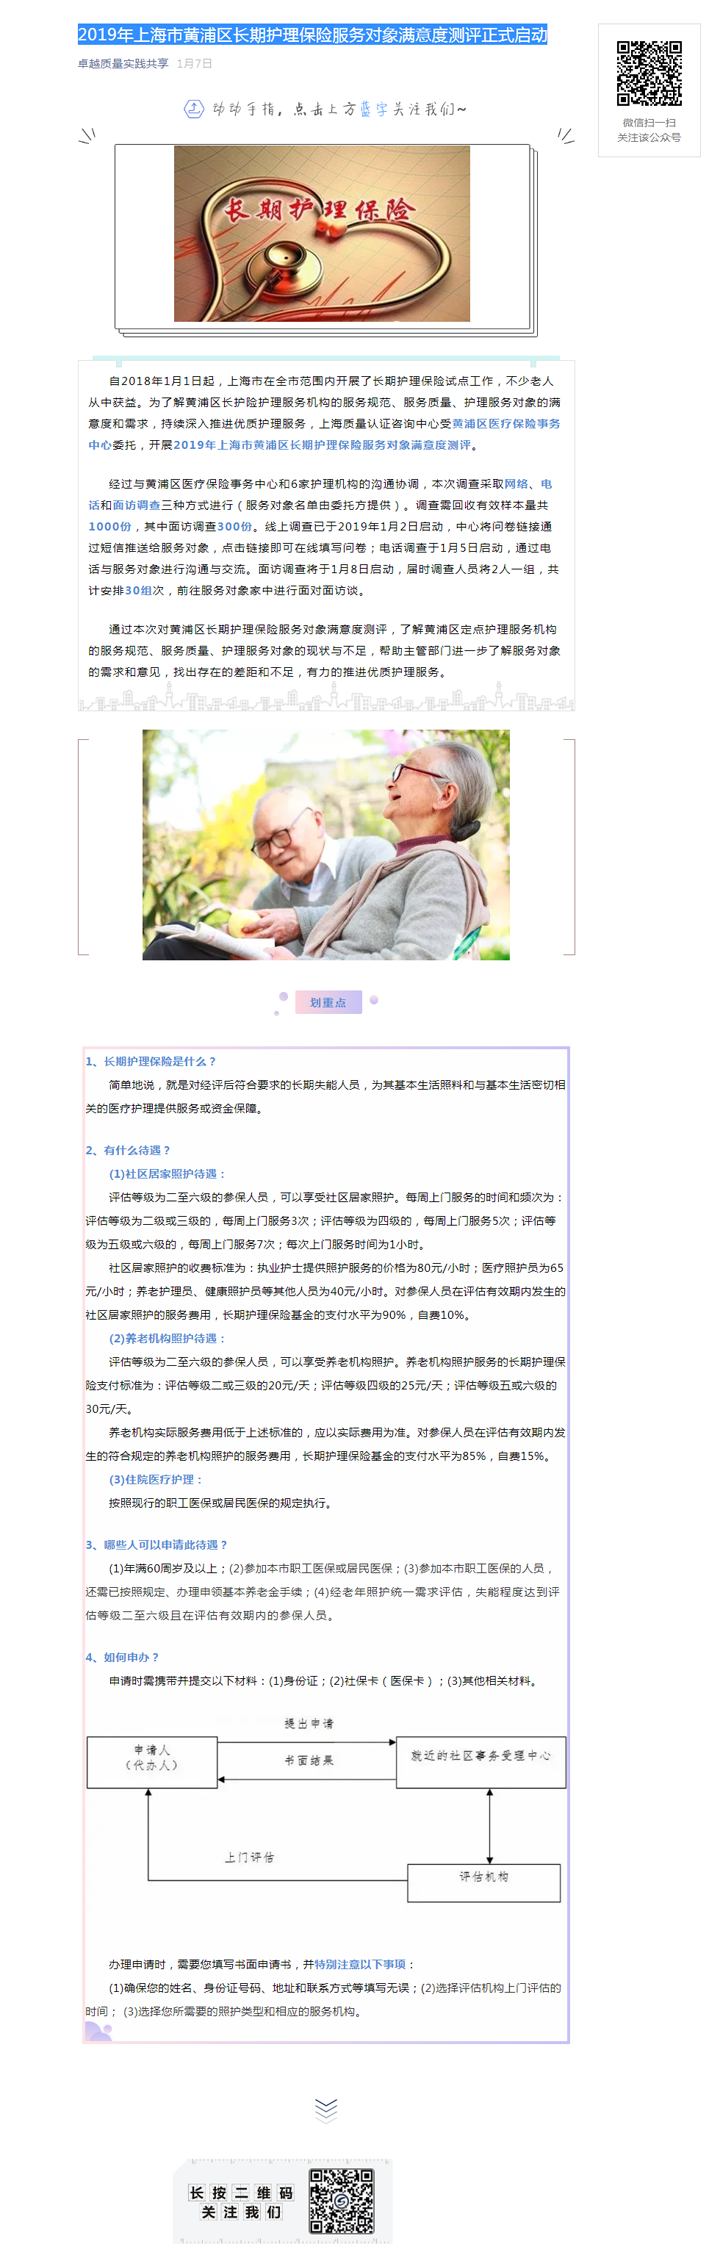 2019年上海市黄浦区长期护理保险服务对象满意度测评工作正式启动.png